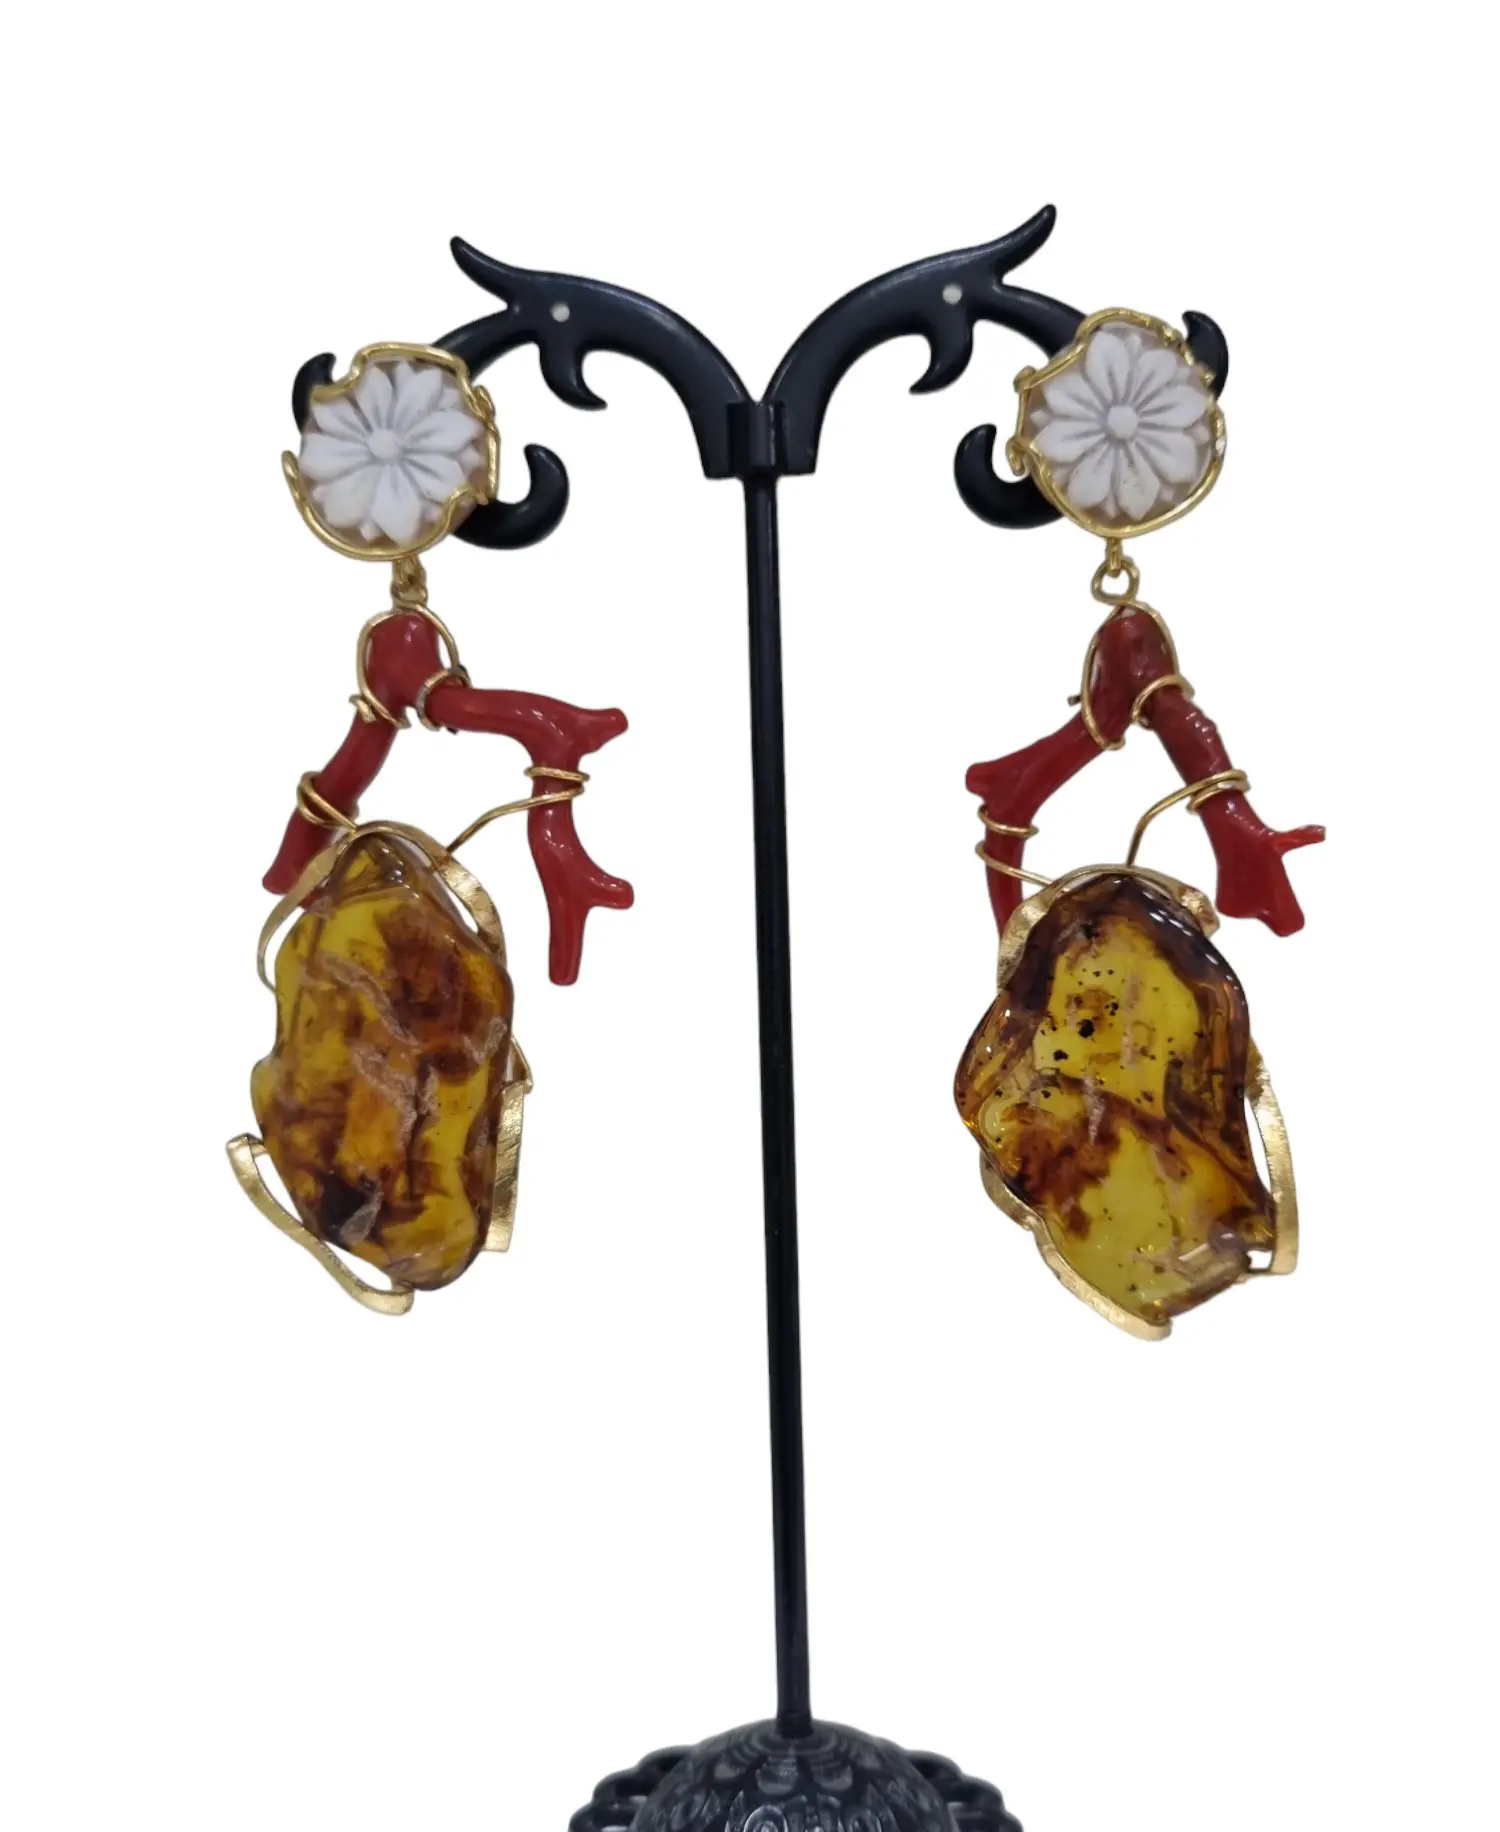 Handgefertigte Ohrringe mit Kamee, Korallenzweig und Bernstein auf vergoldetem 925er Silber. Länge 6,5 cm. Gewicht 8 g